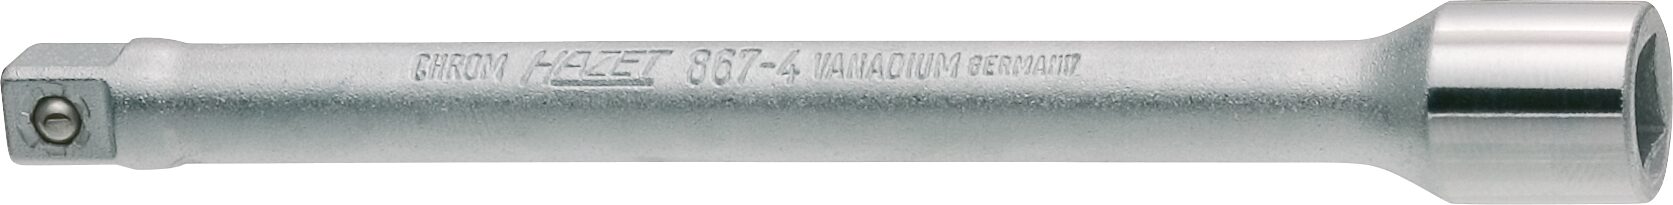 HAZET Verlängerung 867-4 · Vierkant hohl 6,3 mm (1/4 Zoll) · Vierkant massiv 6,3 mm (1/4 Zoll)